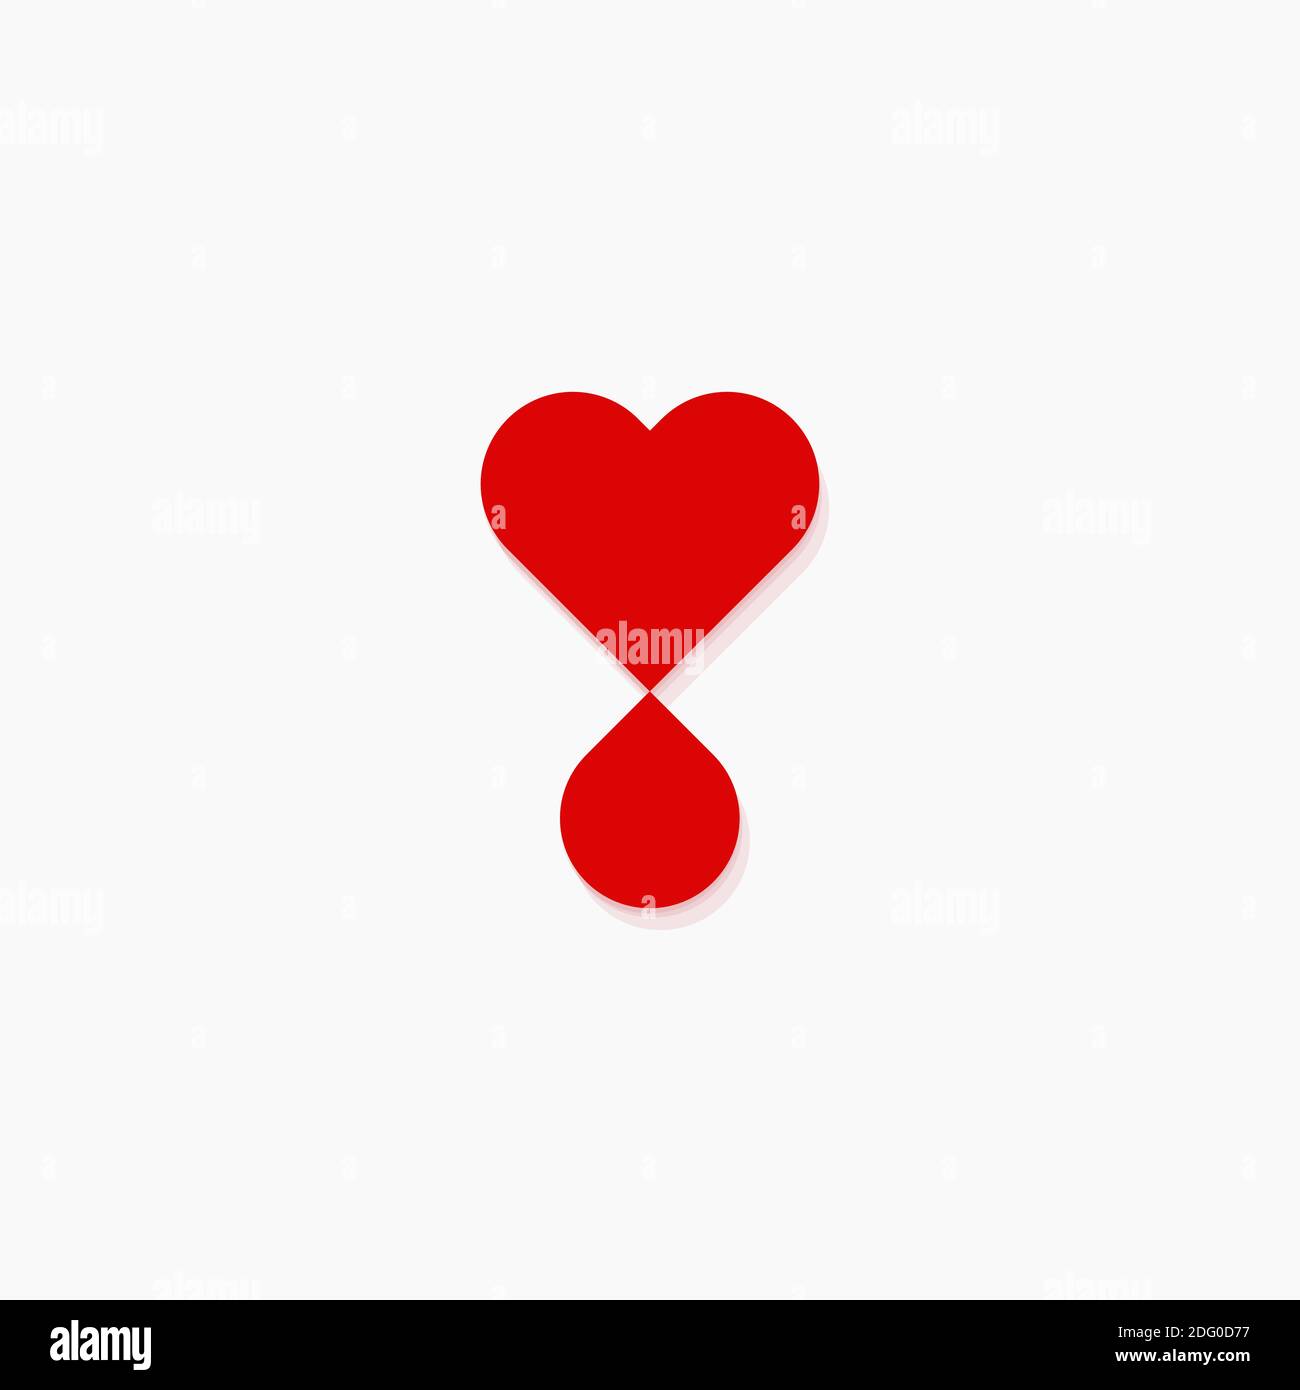 Concetto di logo vettoriale piatto per donazione di sangue. Icona della silhouette rossa isolata per trasfusione di sangue su sfondo bianco. Cuore e goccia simbolo di carità Illustrazione Vettoriale